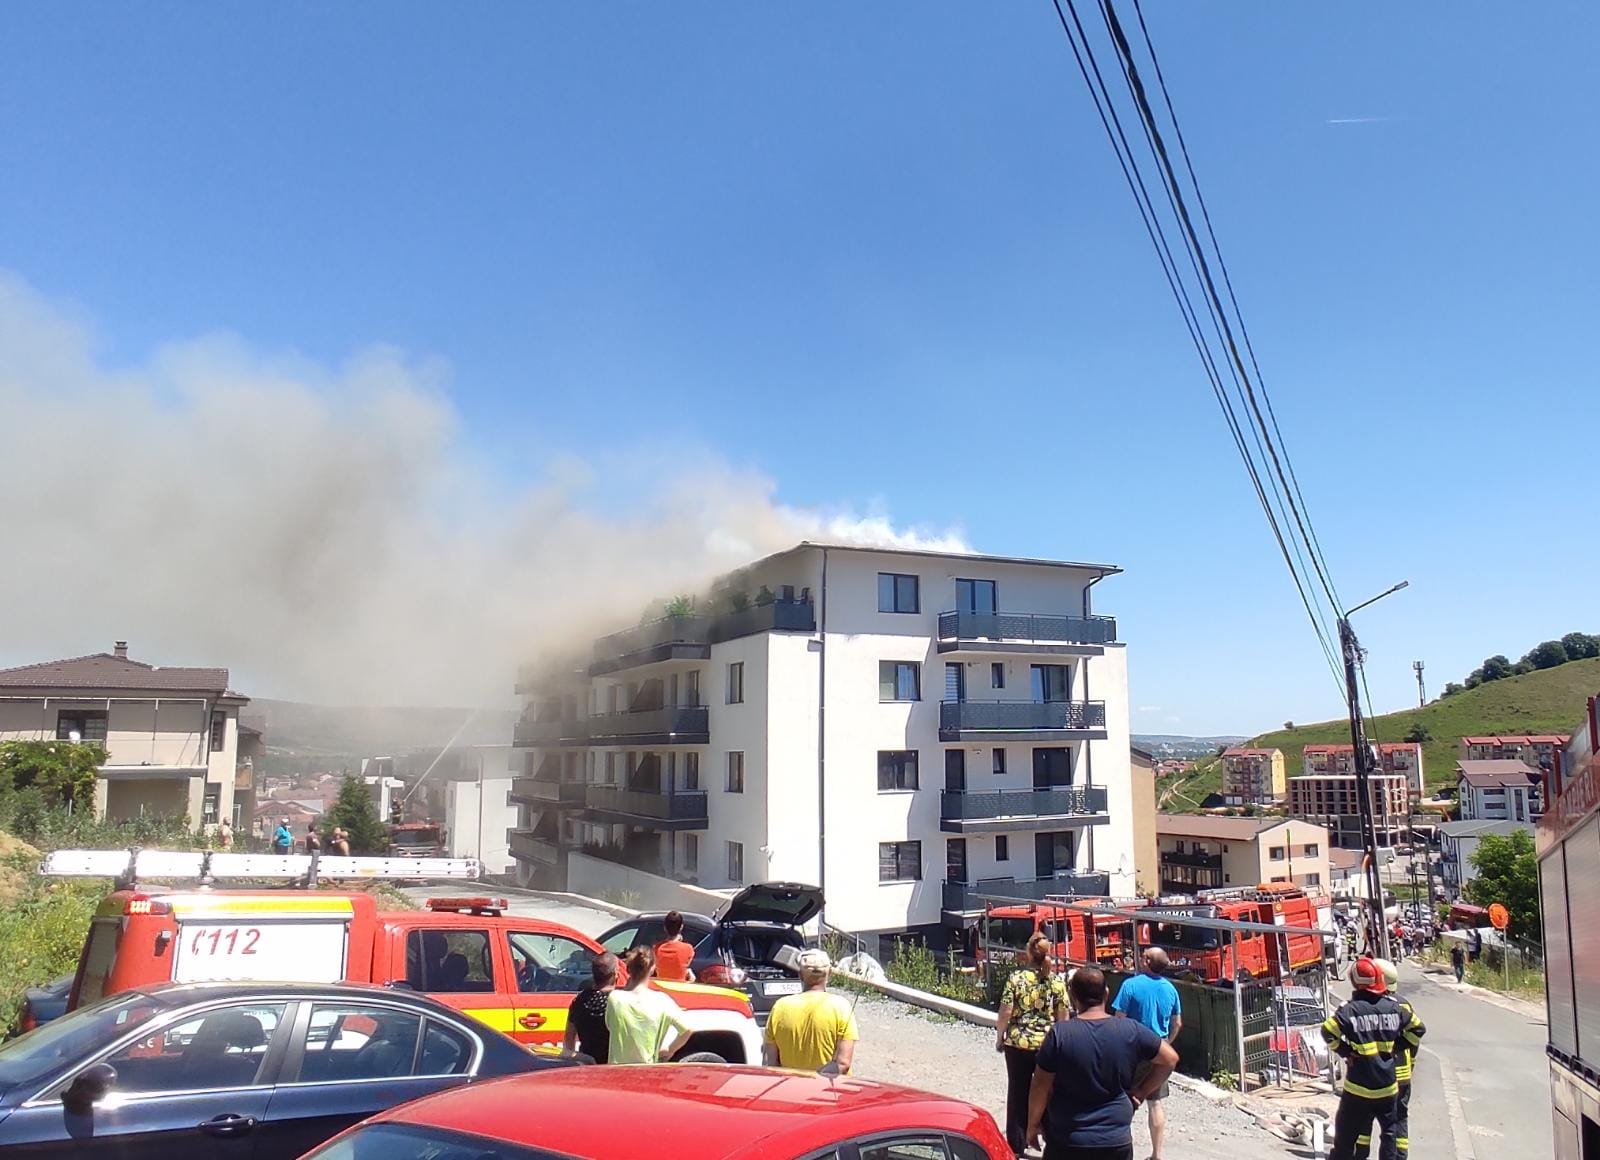 Până la sosirea pompierilor, aproximativ 15 persoane s-au autoevacuat/ FOTO: ISU Cluj